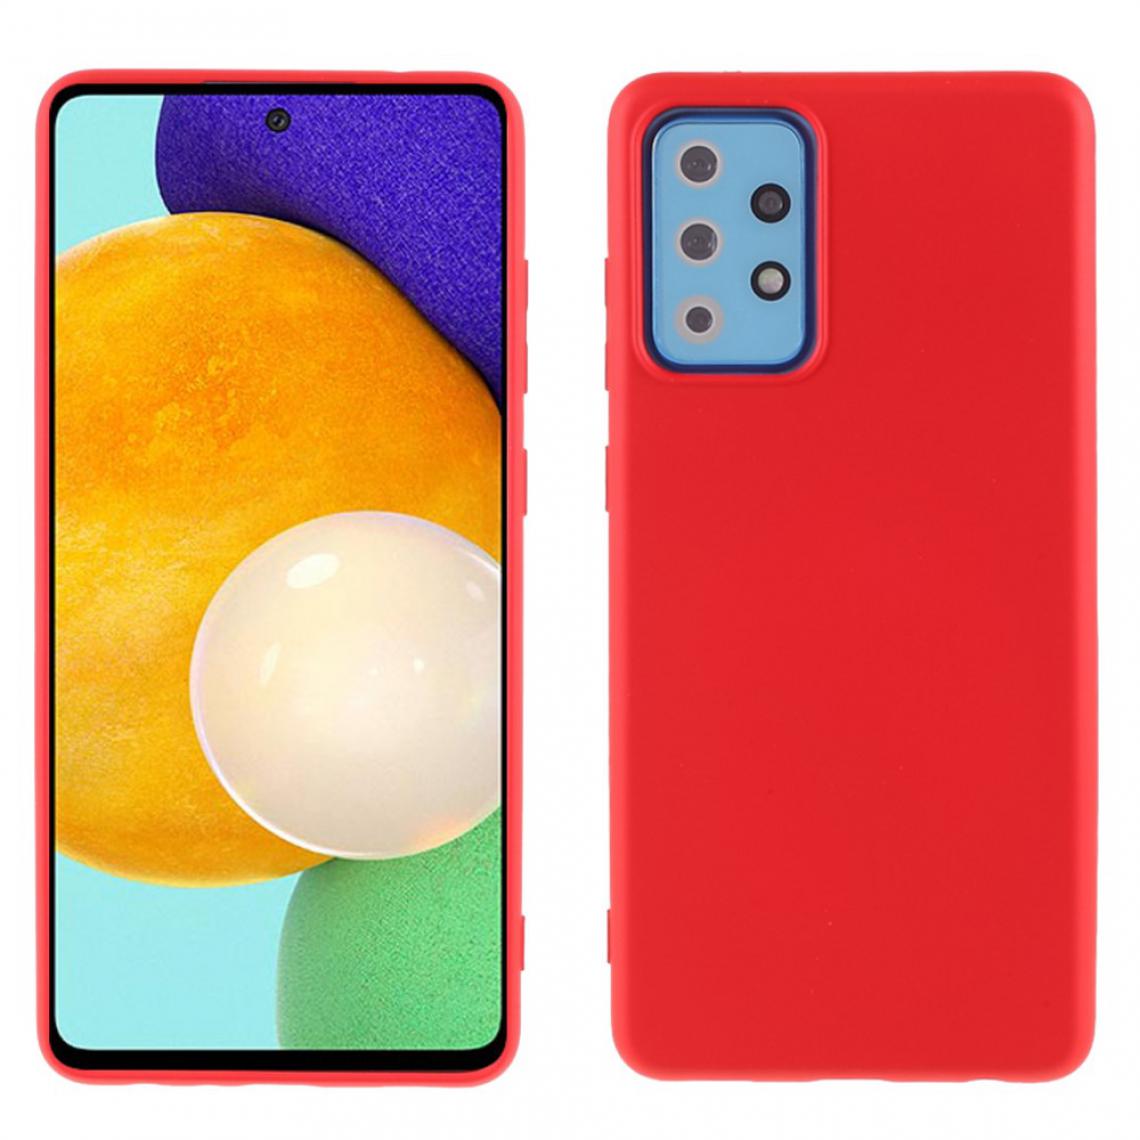 X-Level - Coque en TPU Sensation de texture liquide rouge pour votre Samsung Galaxy A72 4G/5G - Coque, étui smartphone